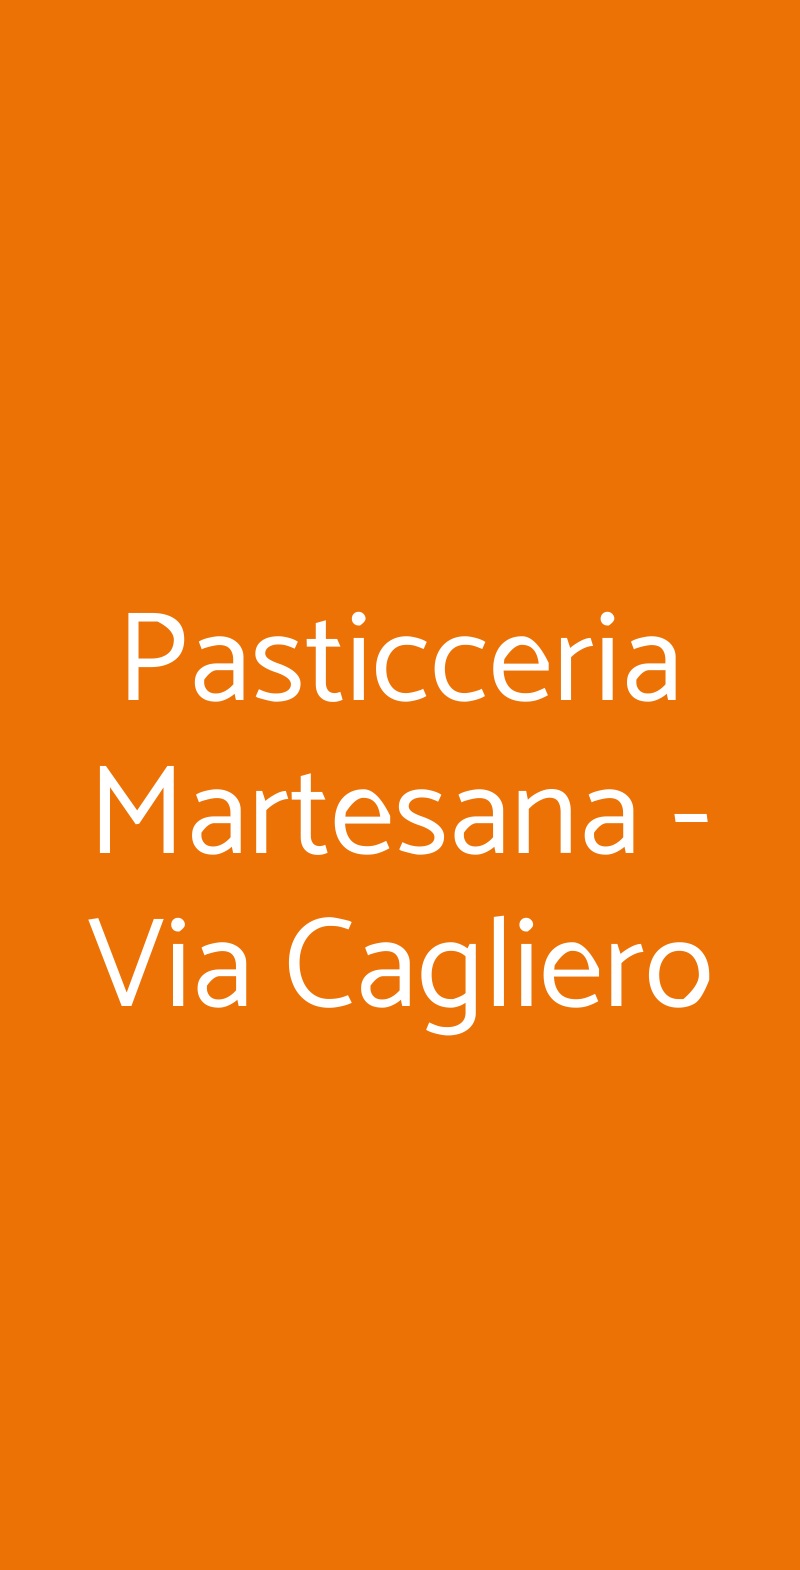 Pasticceria Martesana - Via Cagliero Milano menù 1 pagina